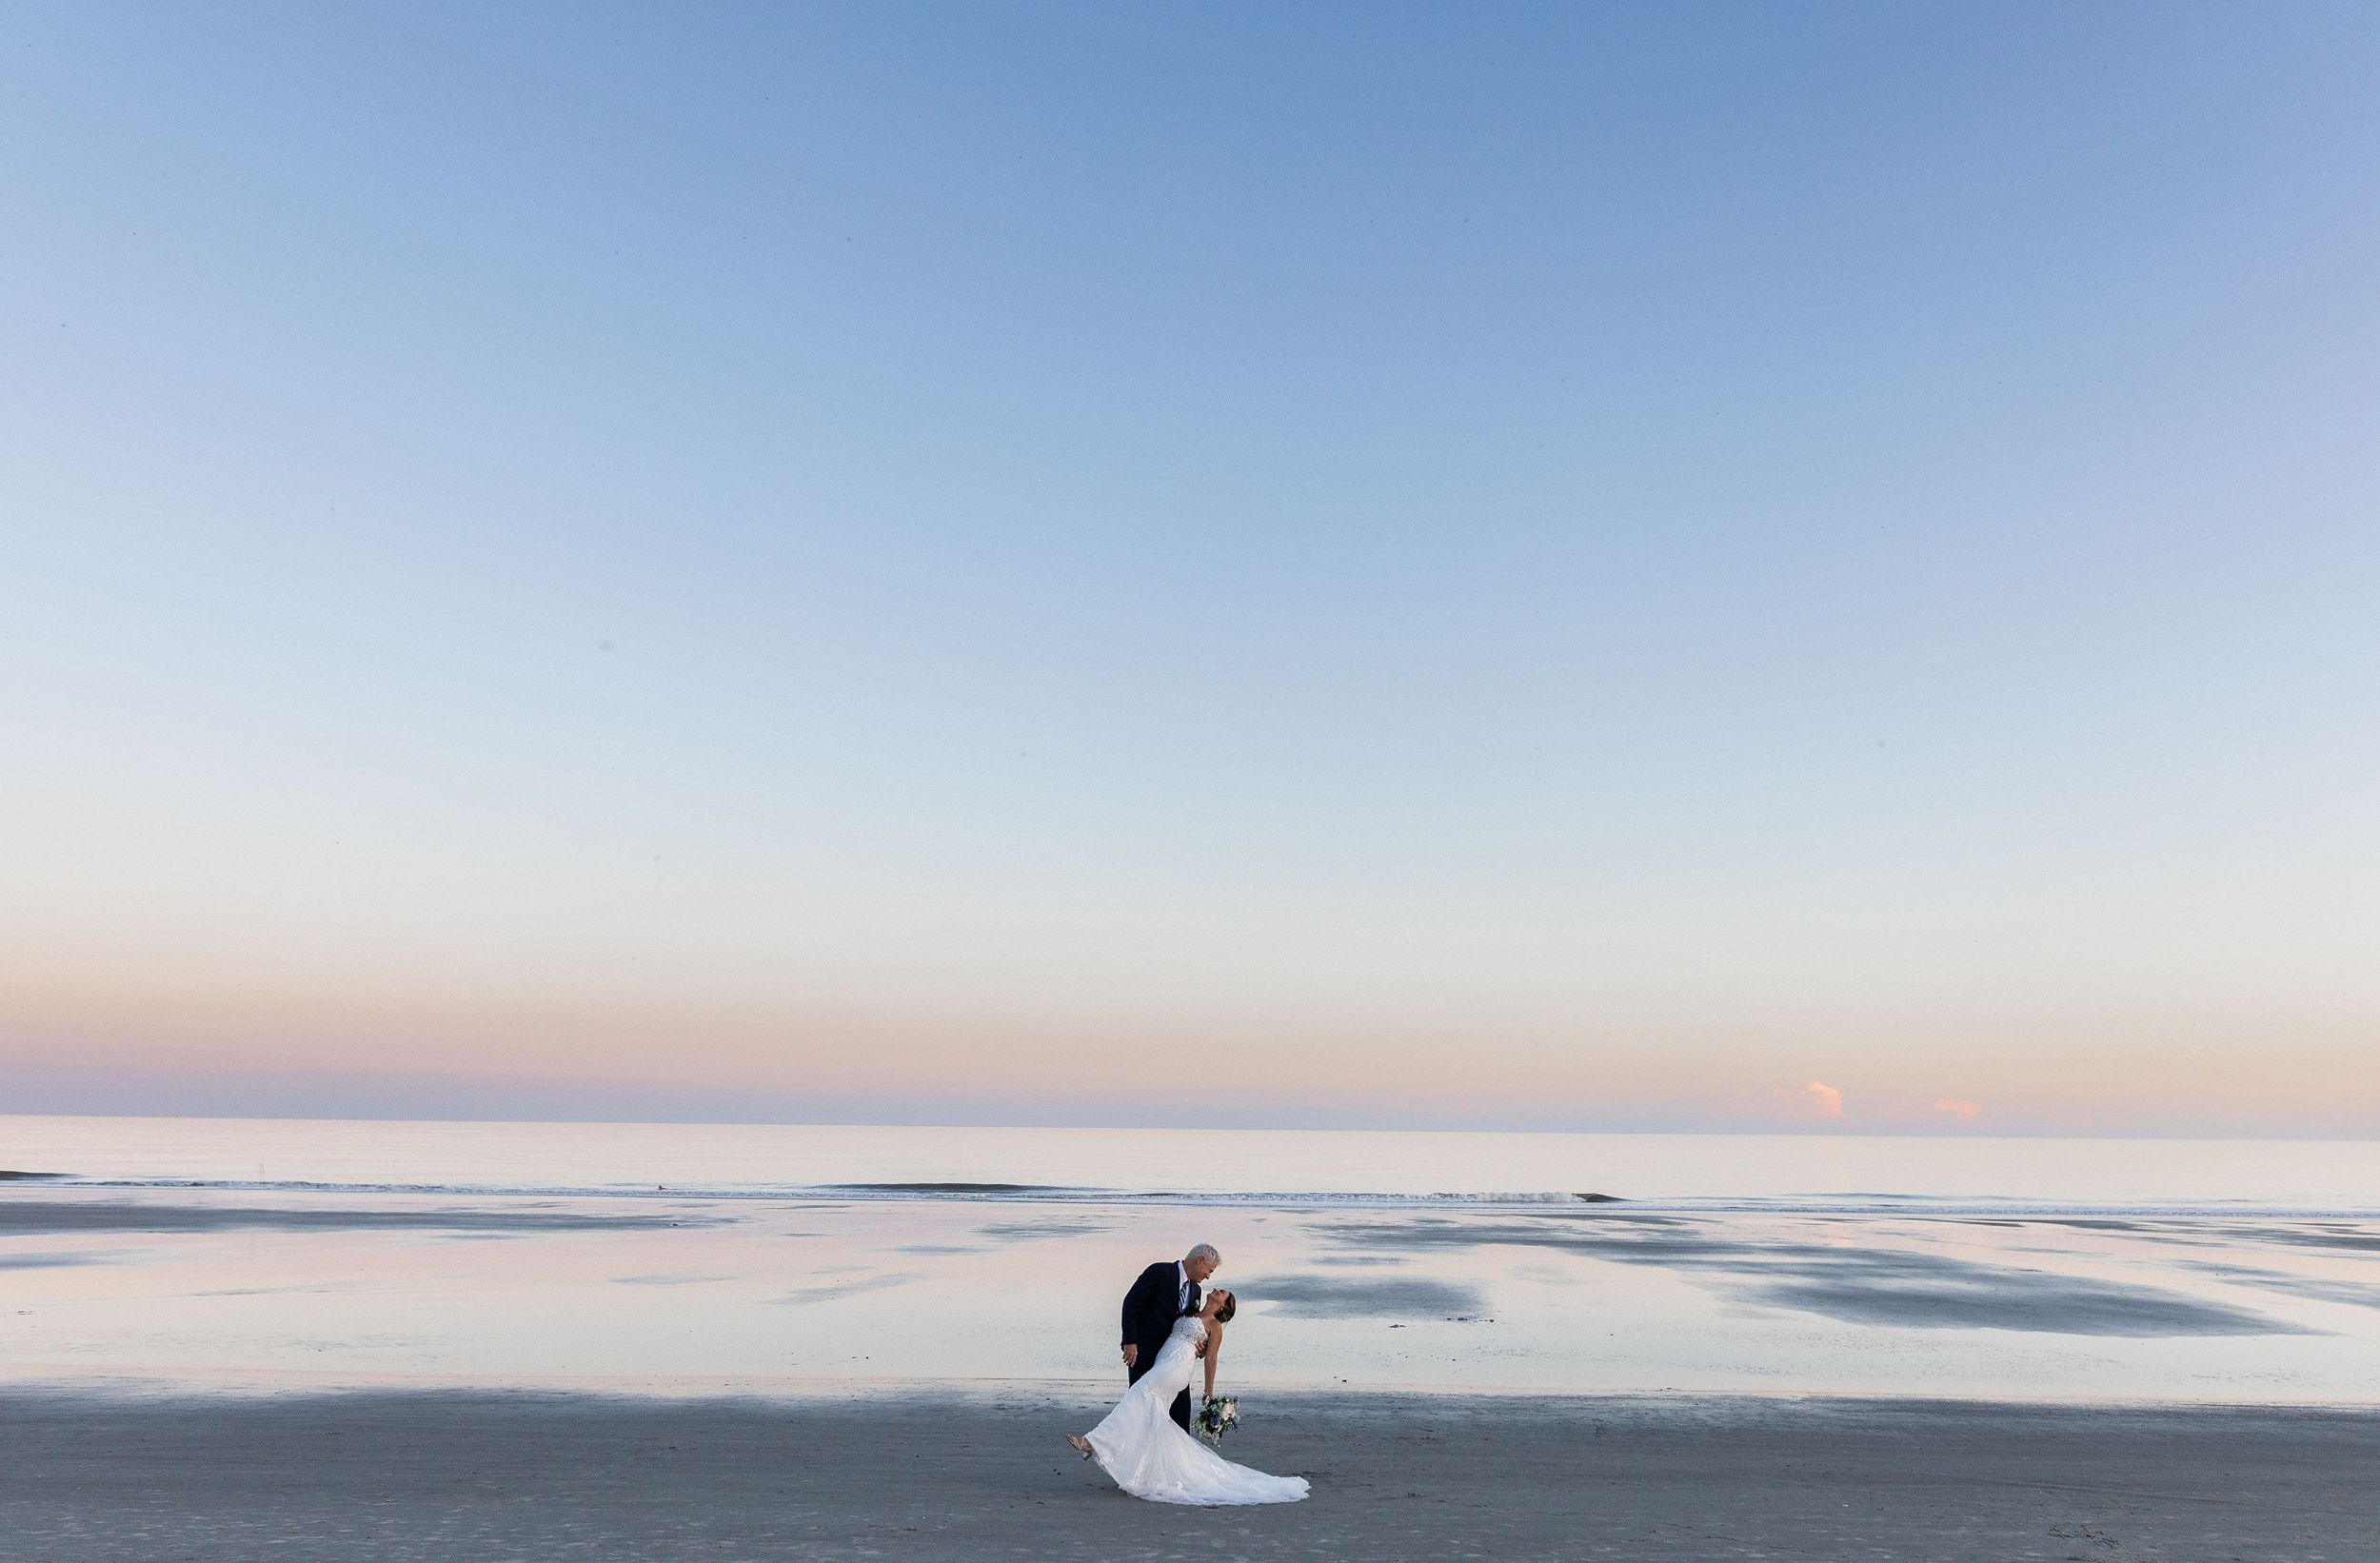 Hilton head beach bride and groom